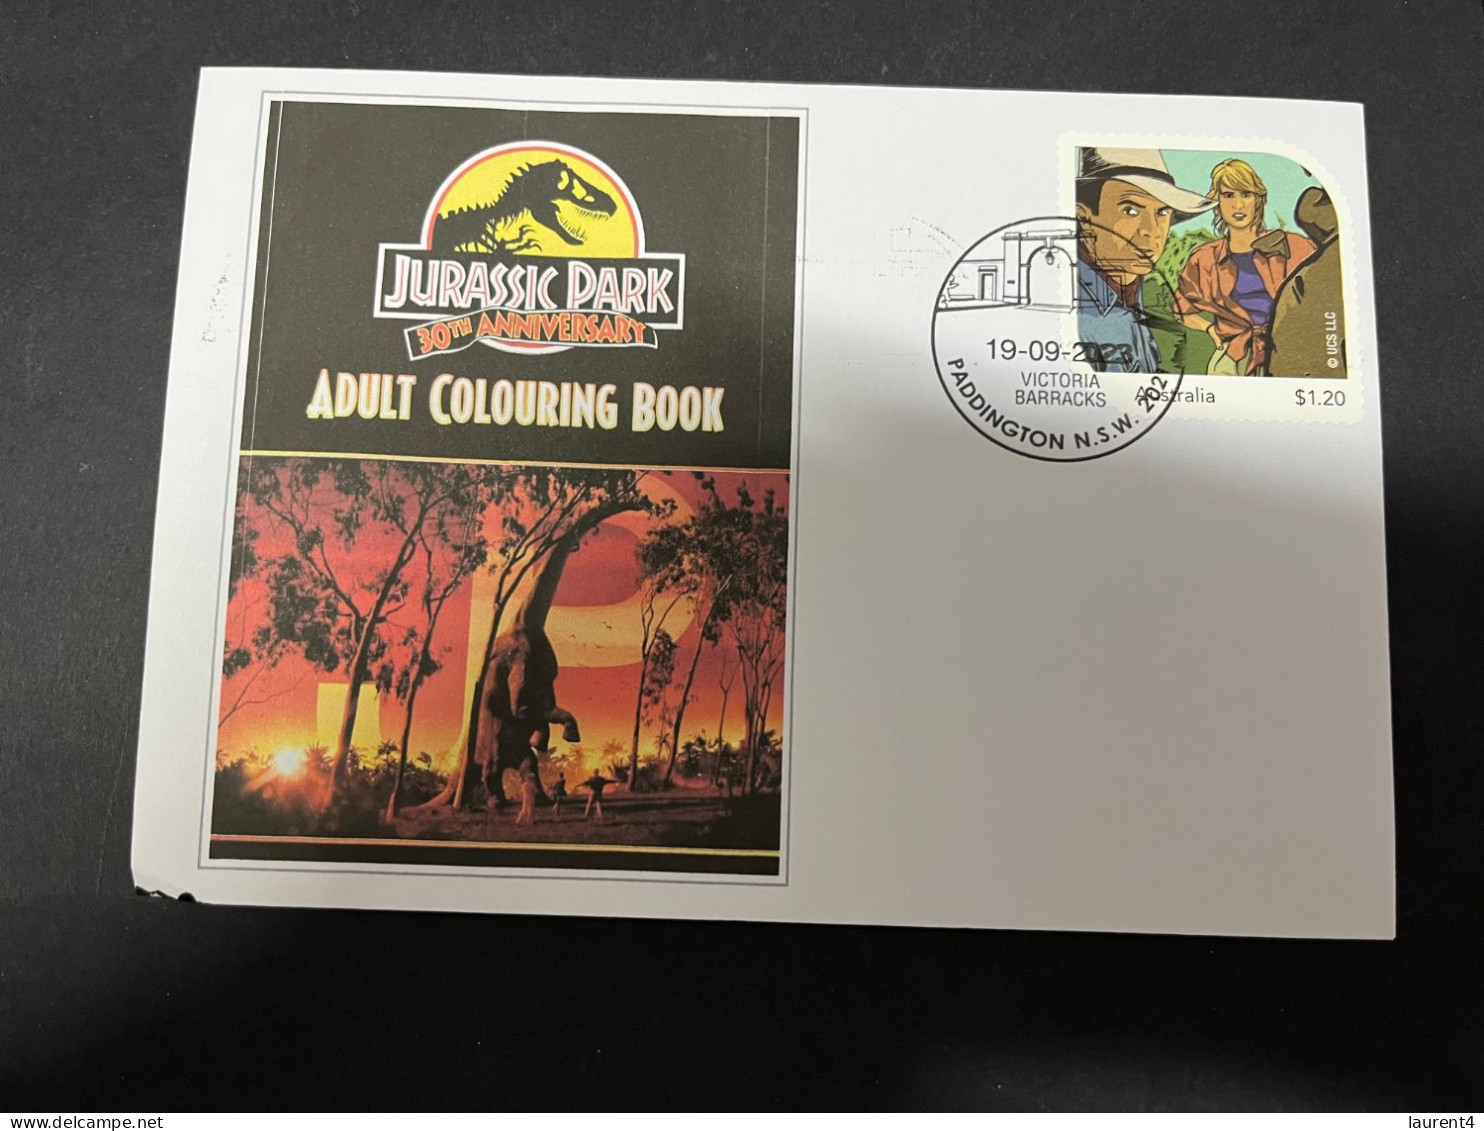 17-5-2024 (5 Z 17) Australian Personalised Stamp Isssued For Jurassic Park 30th Anniversary (Dinosaur & Jurassic Park) - Prehistorics